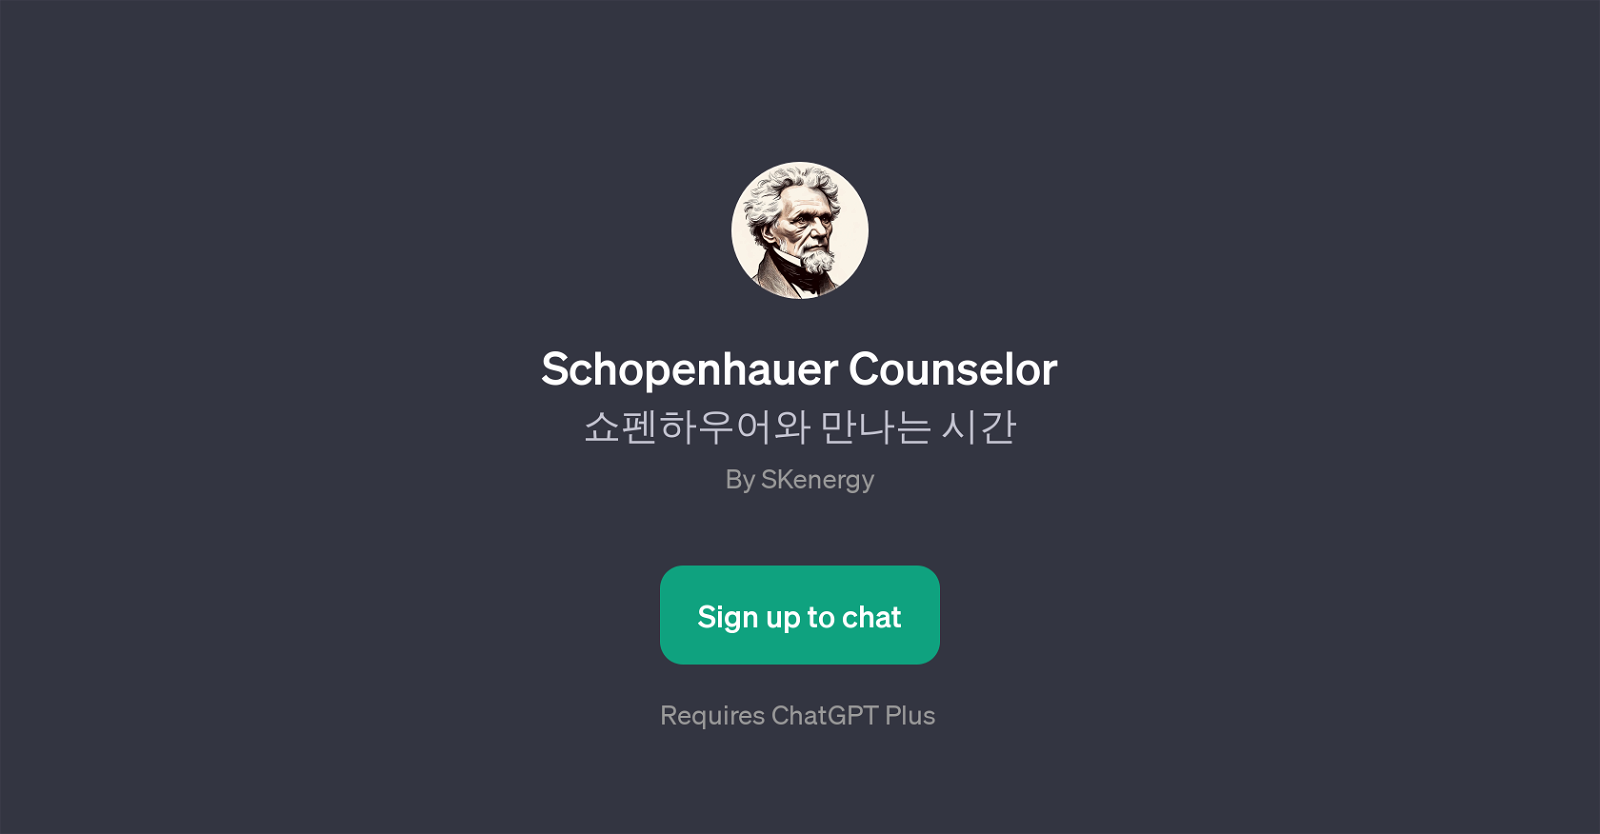 Schopenhauer Counselor website